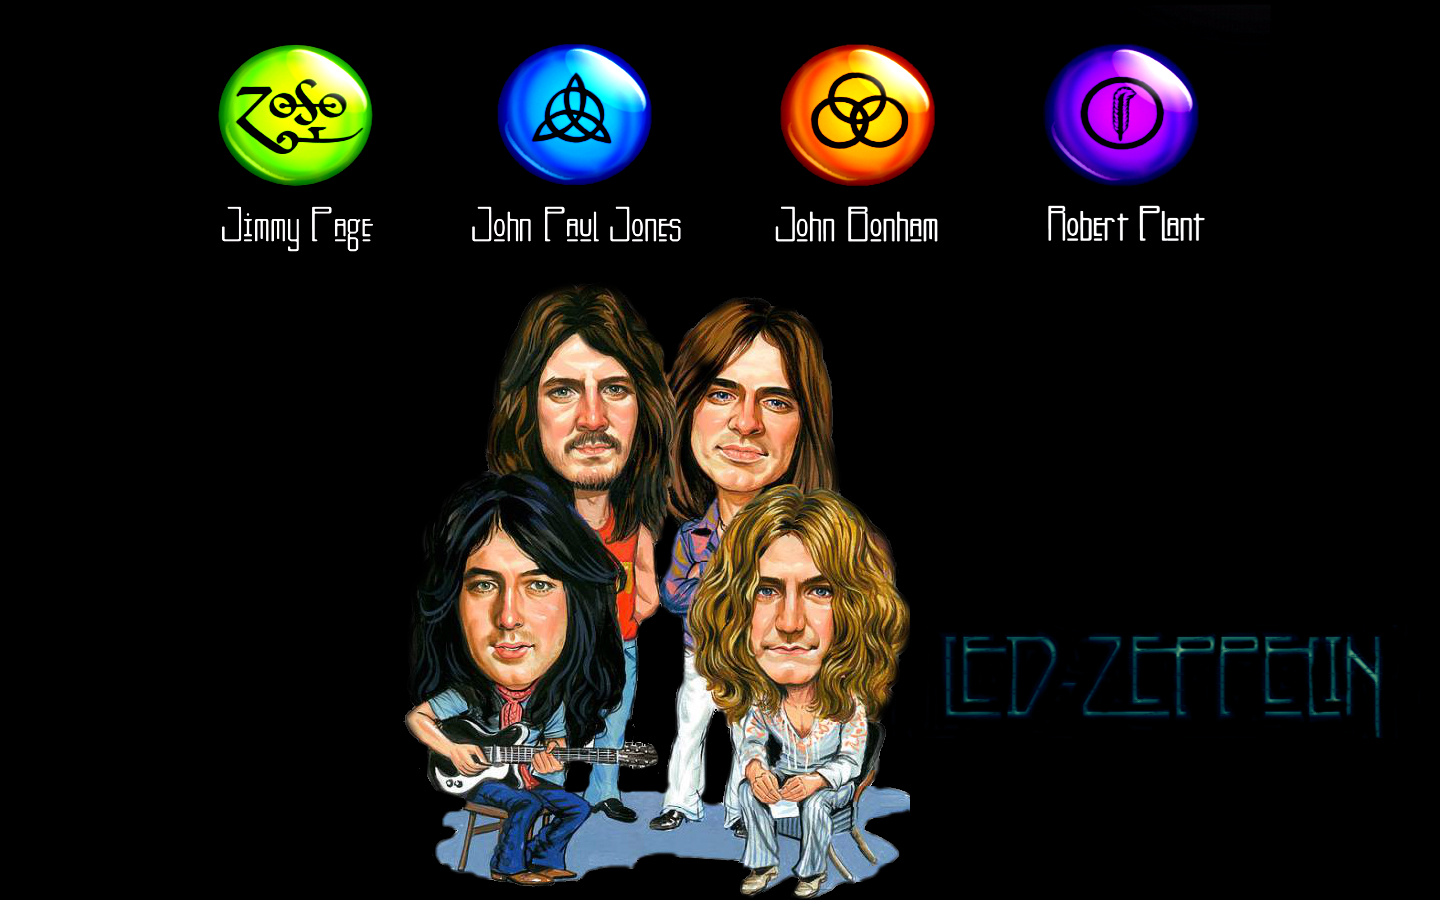 Led Zeppelin Computer Wallpapers, Desktop Backgrounds | 1440x900 ...